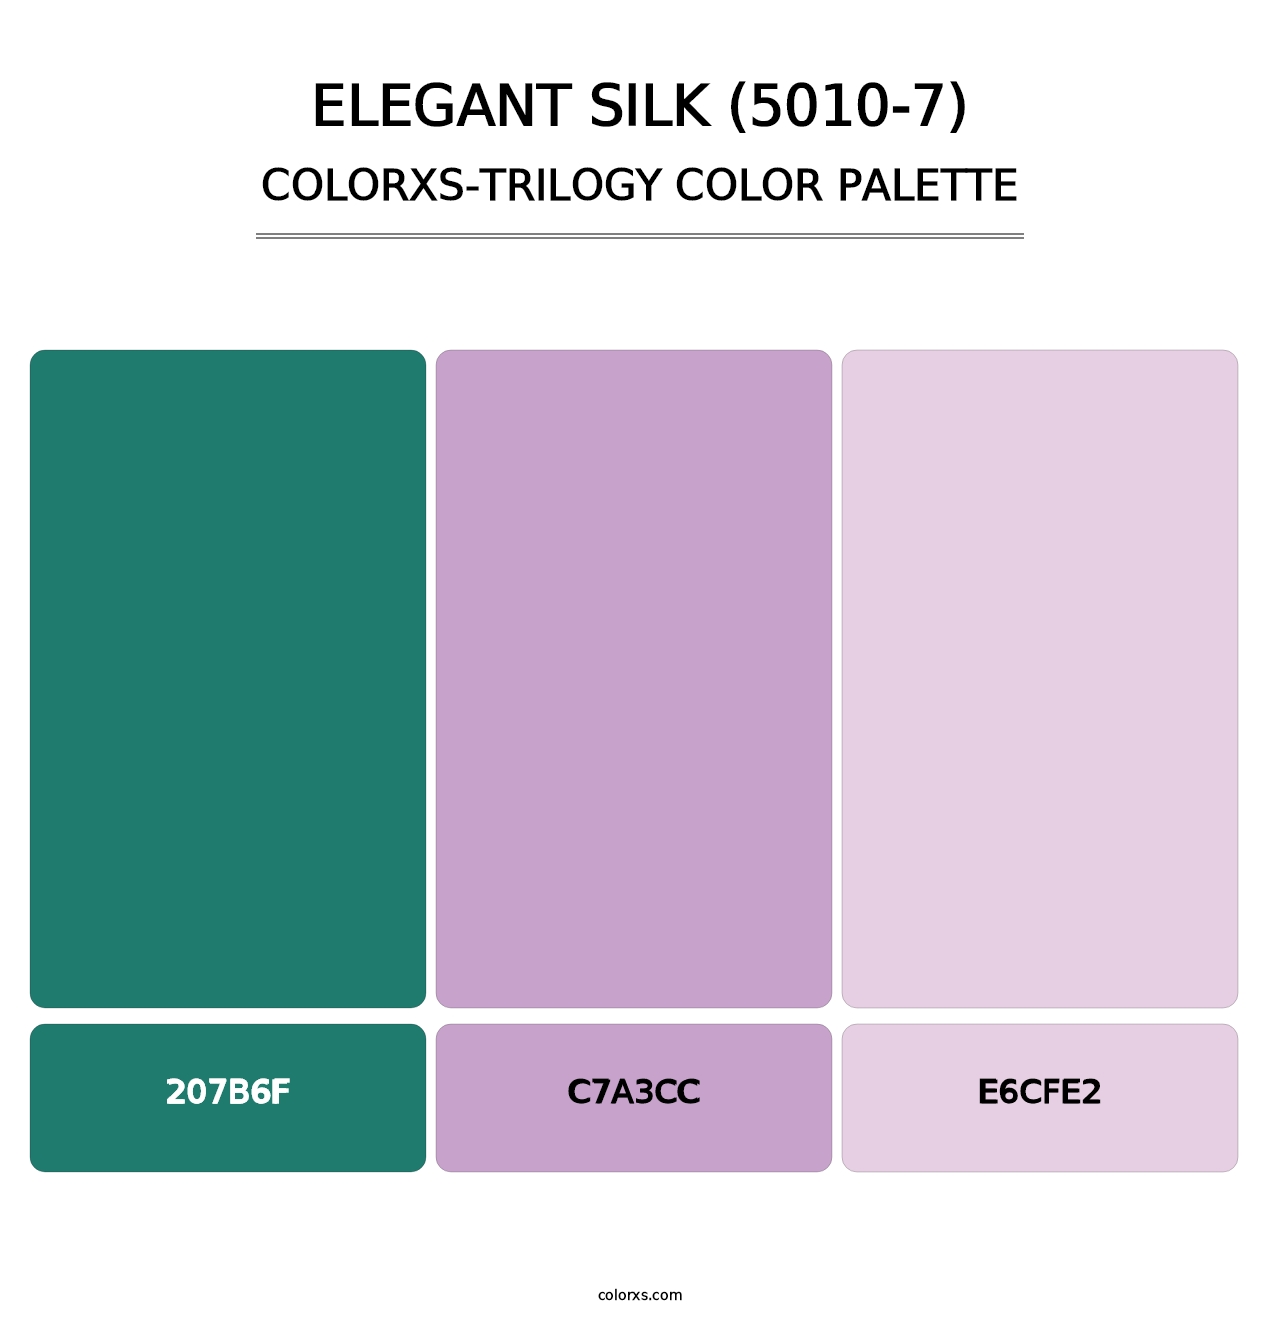 Elegant Silk (5010-7) - Colorxs Trilogy Palette